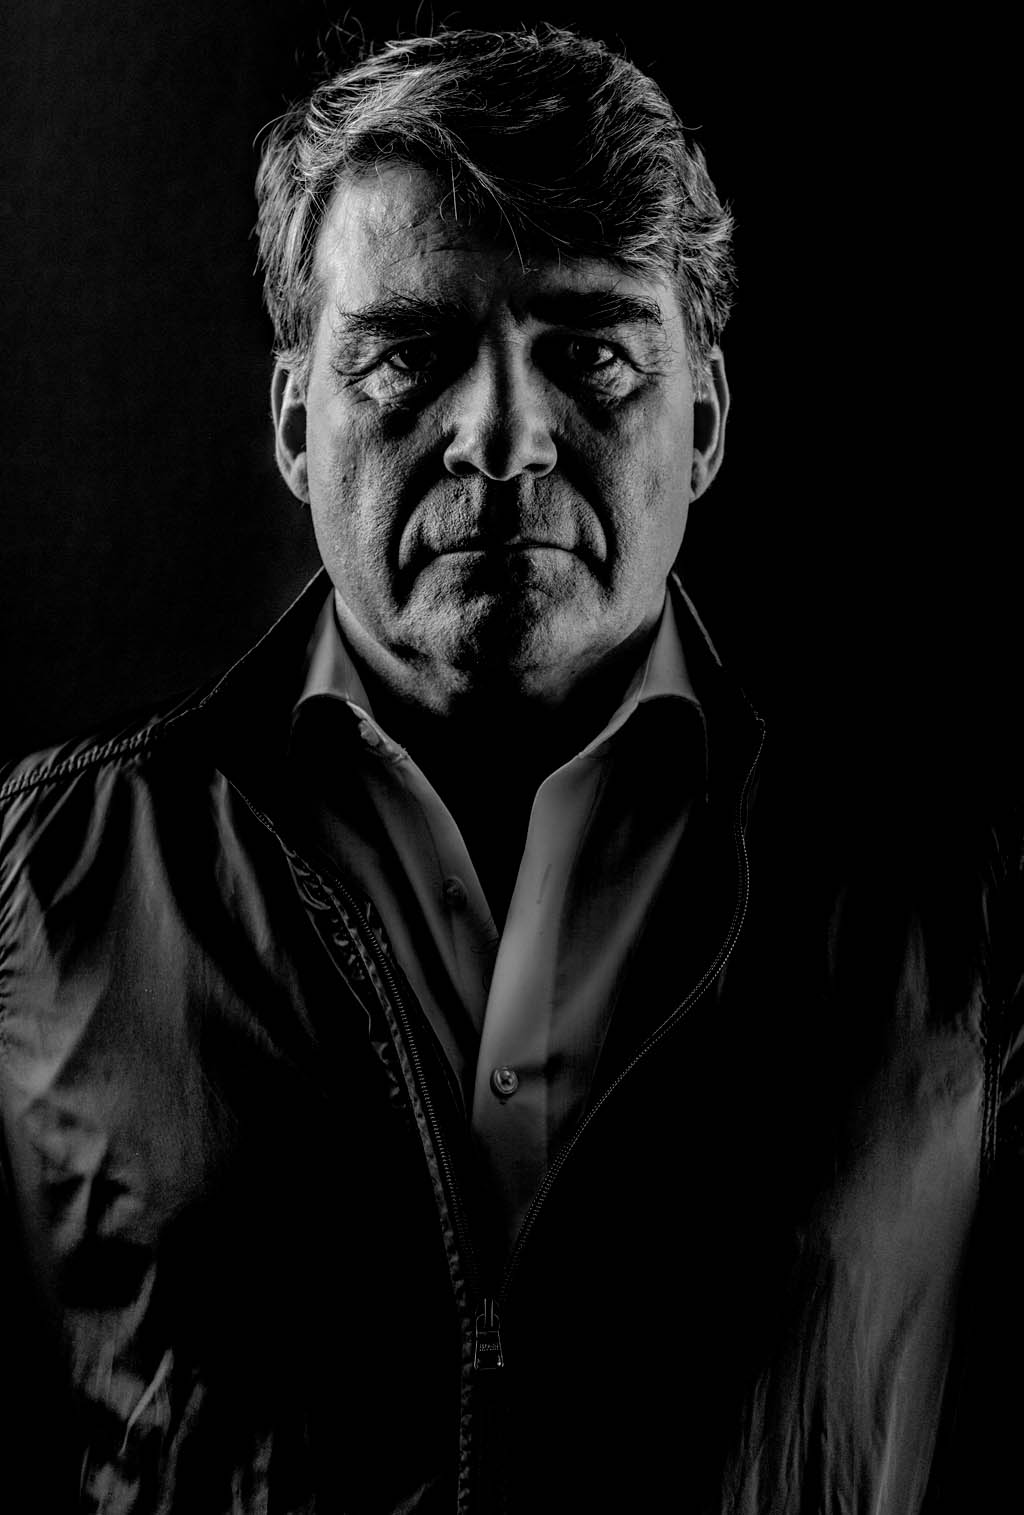 Fotografie von Stefan Freund, Portrait, Michael Schütz, Schauspieler, Akteur, Frankfurt am Main